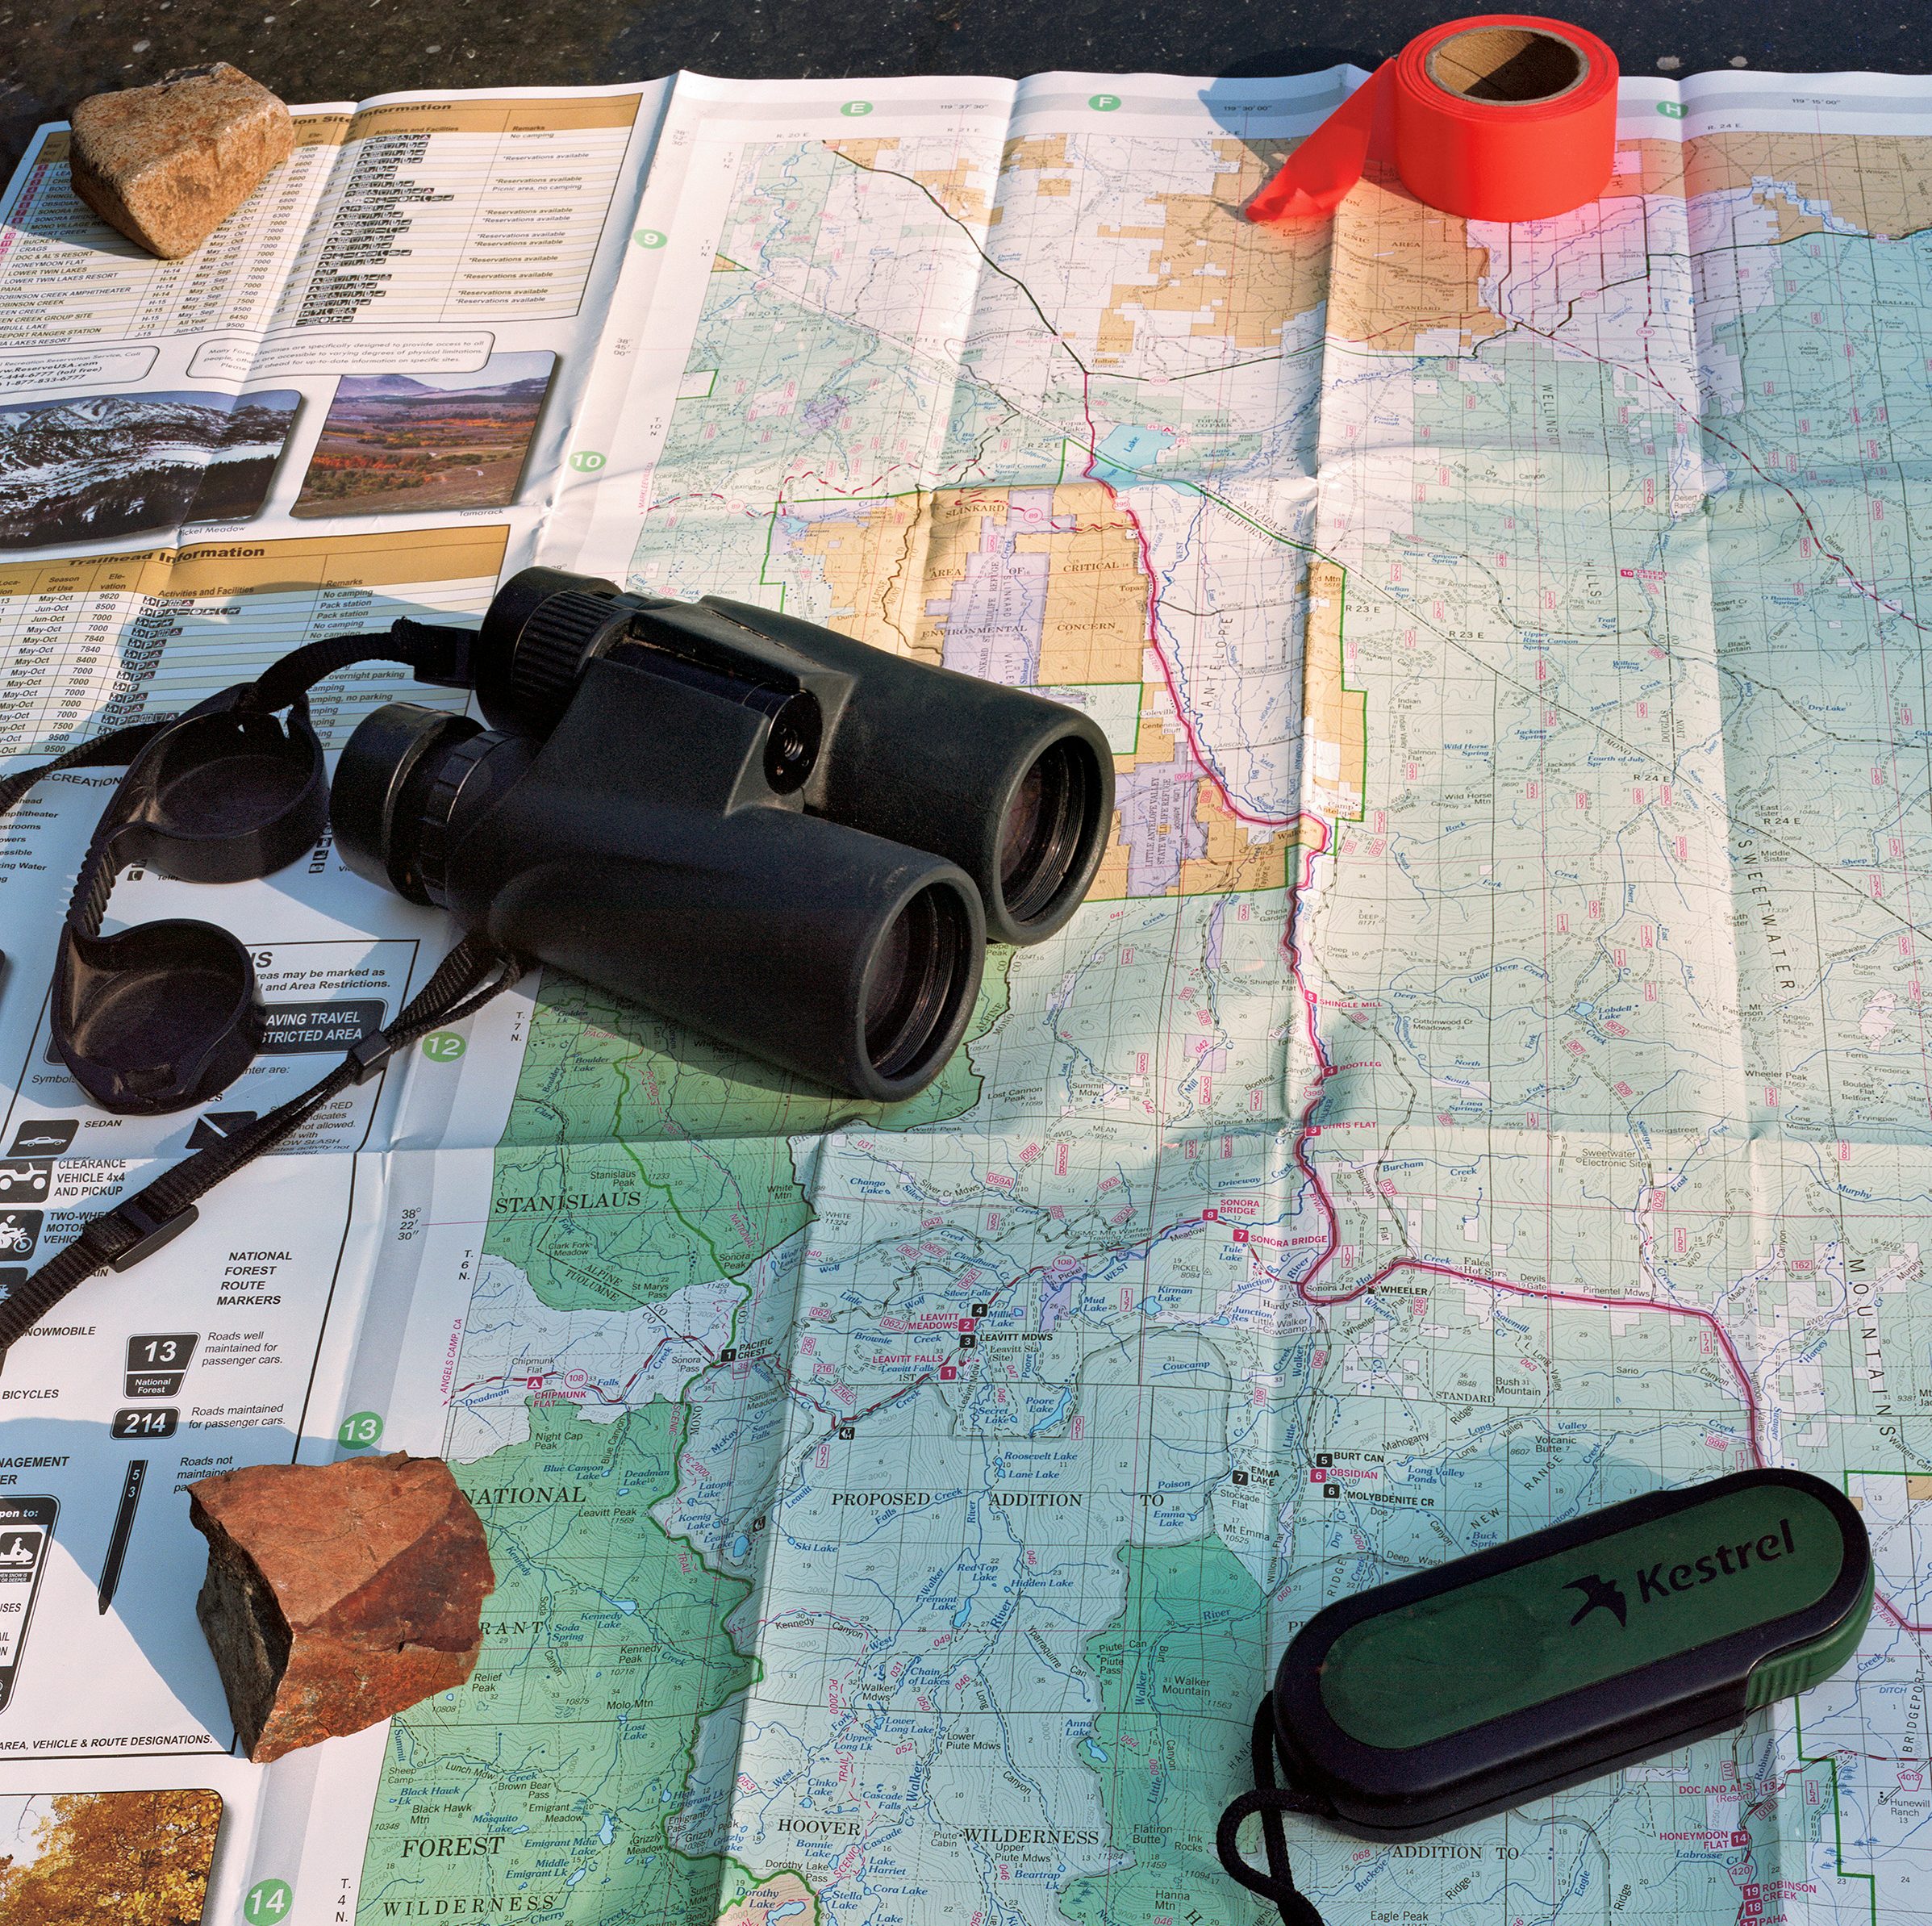 Tape, binoculars, and a kestrel tool lie across a ranger map